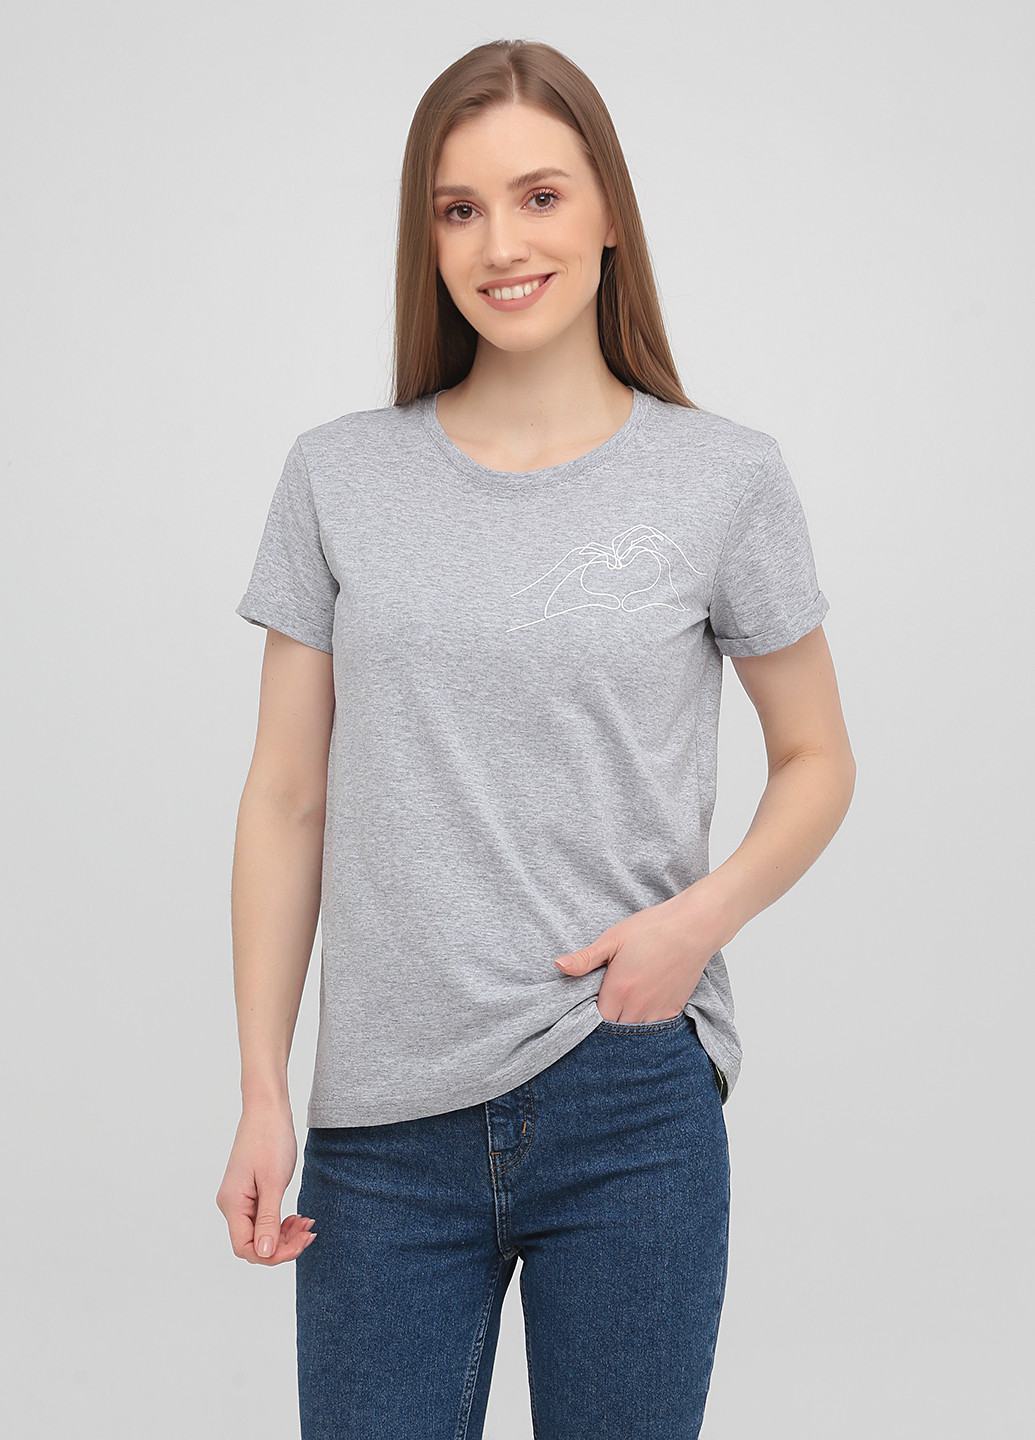 Сіра літня футболка базова з підворотом, руки та серце KASTA design